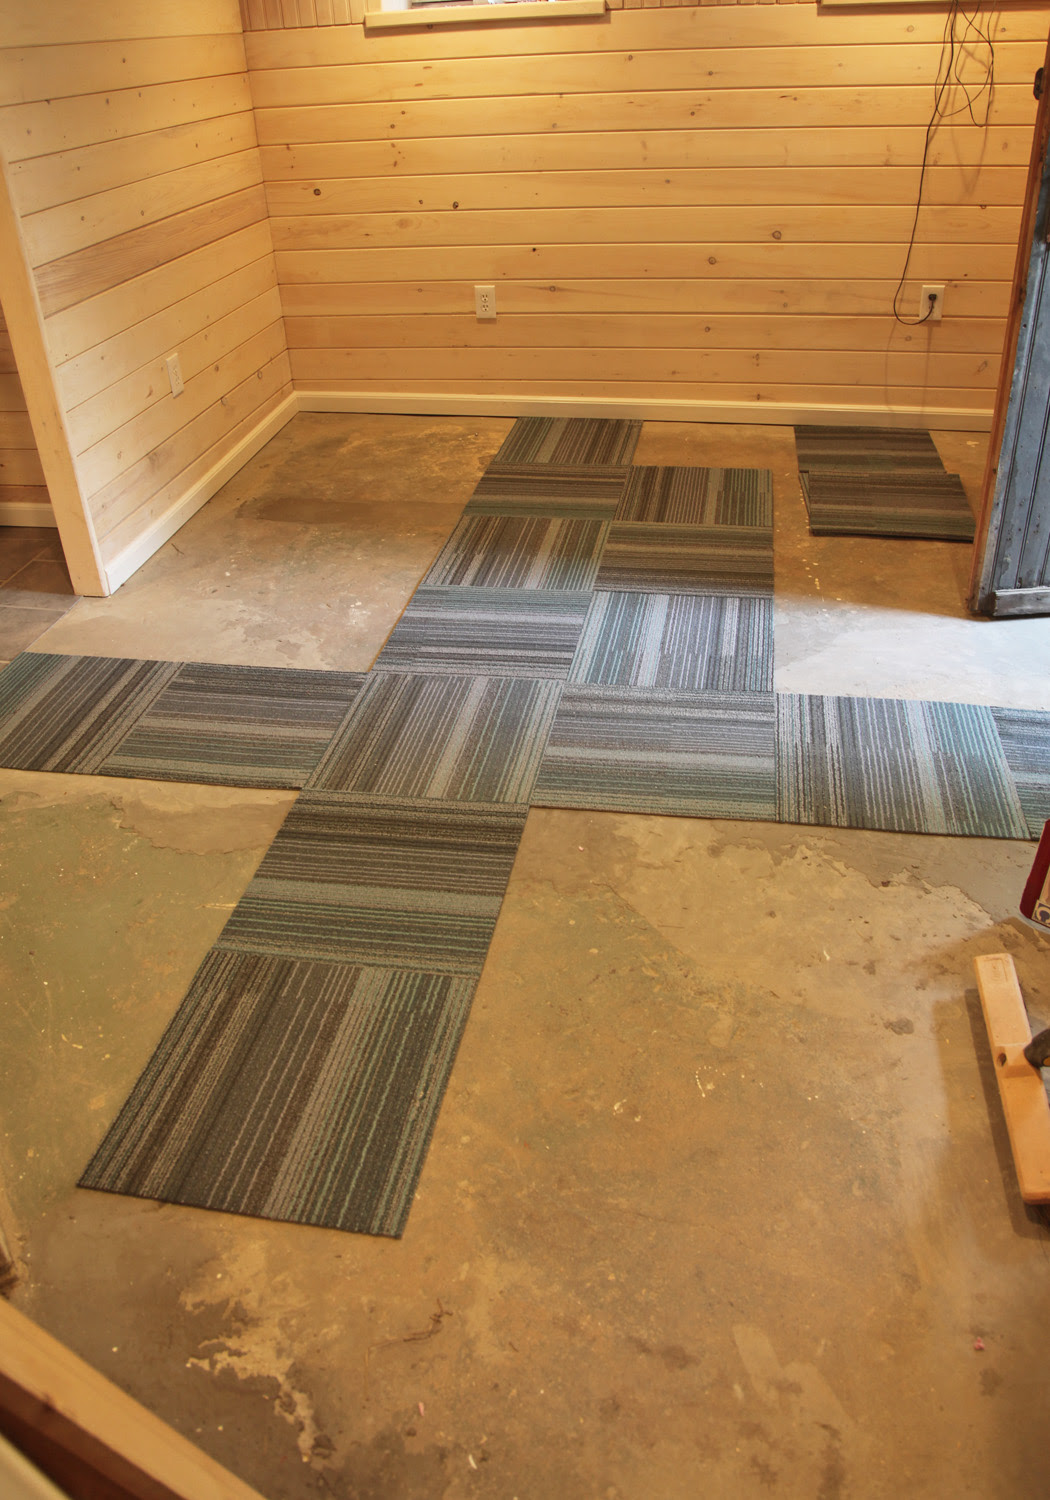 Carpet Tiles For Basement Home Design, Carpet Tiles Basement Concrete